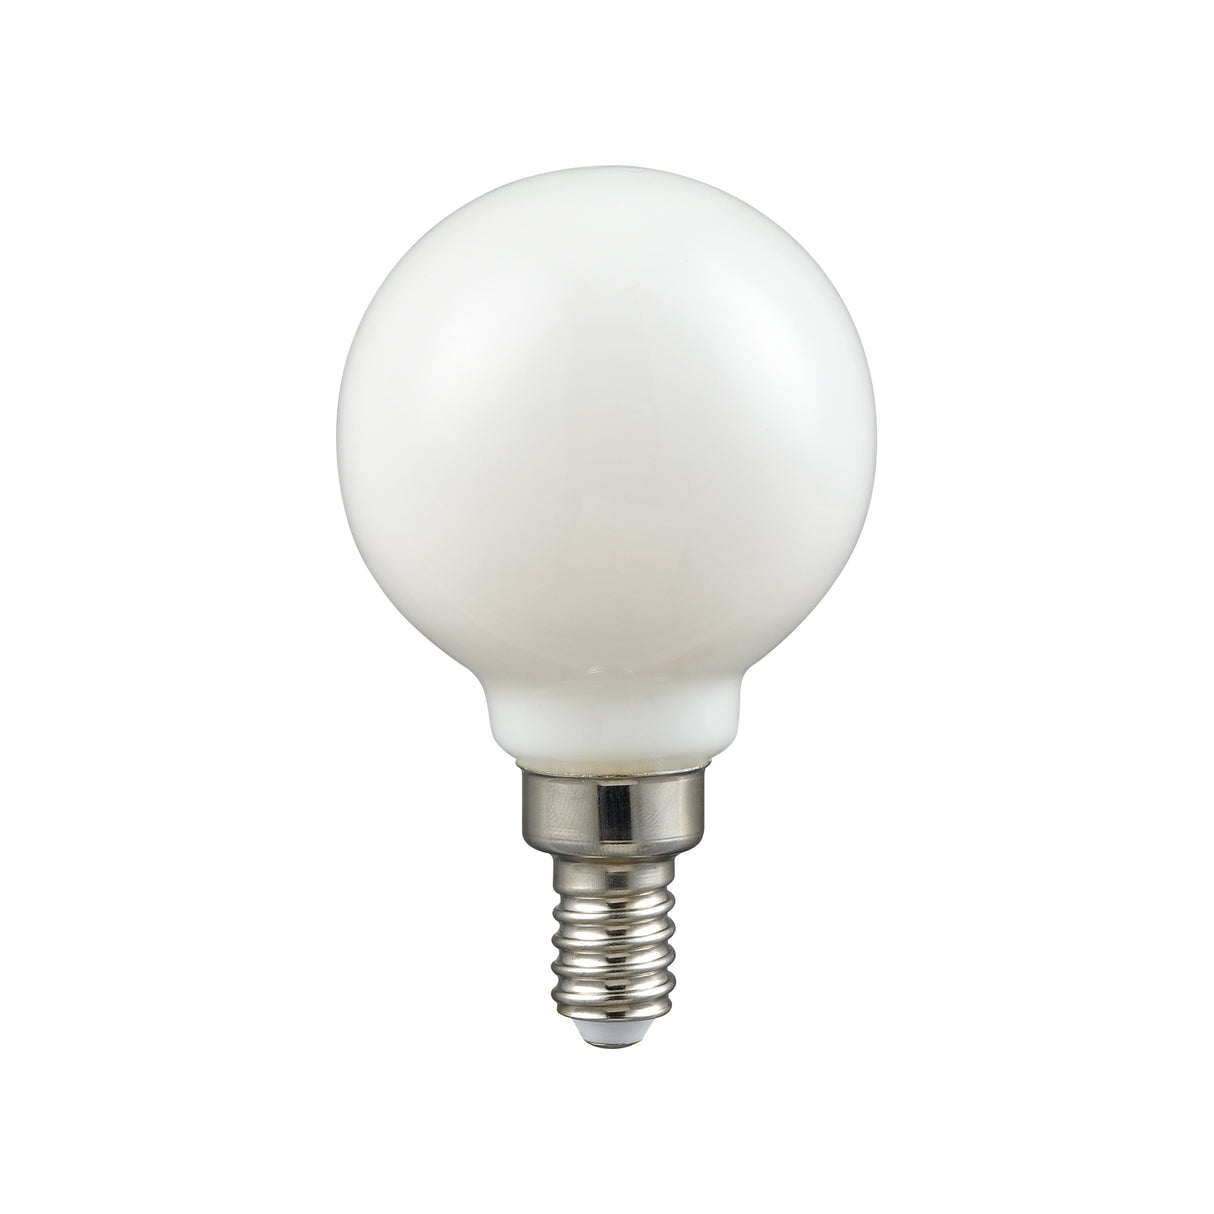 Elk 1115 LED Candelabra Bulb - Shape G16.5, Base E12, 2700K - Frosted